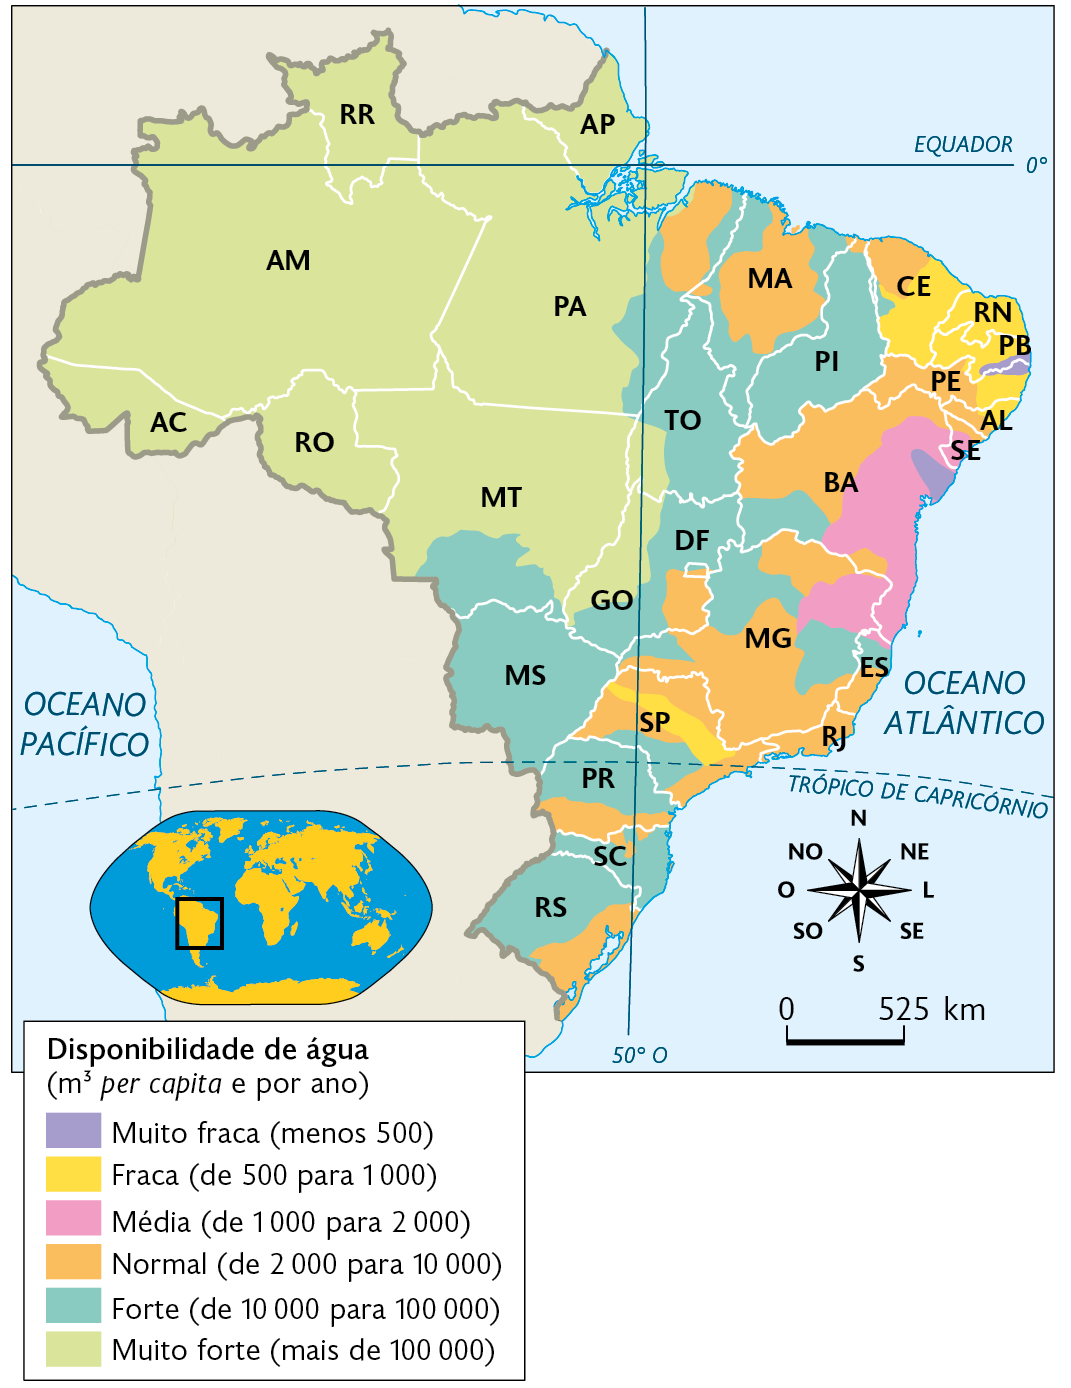 Mapa. Disponibilidade de água no Brasil (2009). 
Disponibilidade de água (metros cúbicos per capita e por ano). 
Muito fraca (menos 500): nordeste da Bahia, sudeste da Paraíba e nordeste de Pernambuco. 
Fraca (de 500 para 1000): centro-sul do Ceará, Rio Grande do Norte, Paraíba, leste de Pernambuco, nordeste de Alagoas e faixa no centro de São Paulo. 
Média (de 1000 para 2000): leste da Bahia e nordeste de Minas Gerias. 
Normal (de 2000 para 10000): nordeste do Pará, centro-norte do Maranhão, noroeste do Ceará, leste de Alagoas, norte de Sergipe, centro-oeste de Pernambuco, oeste e sul da Bahia, norte e centro-sul de Minas Gerais, leste de Goiás, norte, oeste e leste de São Paulo, centro-sul do Espírito Santo, Rio de Janeiro, sul do Paraná, área no norte de Santa Catarina, leste e sudeste do Rio Grande do Sul. 
Forte (de 10000 para 100000): leste do Pará, noroeste, nordeste e sul do Maranhão, Piauí, Tocantins, leste de Goiás, sul do Mato Grosso, Mato Grosso do Sul, sudoeste da Bahia, norte, leste e sudoeste de Minas Gerias, norte do Espírito Santo, sul de São Paulo, Paraná, Santa Catarina e Rio Grande do Sul. 
Muito forte (mais de 100000): oeste de Goiás, sudoeste de Tocantins, Mato Grosso, Pará, Amapá, Roraima, Amazonas, Acre e Rondônia. No canto inferior esquerdo, mapa de localização, planisfério destacando a região descrita. No canto inferior direito, rosa dos ventos e a escala: 525 quilômetros por centímetro.